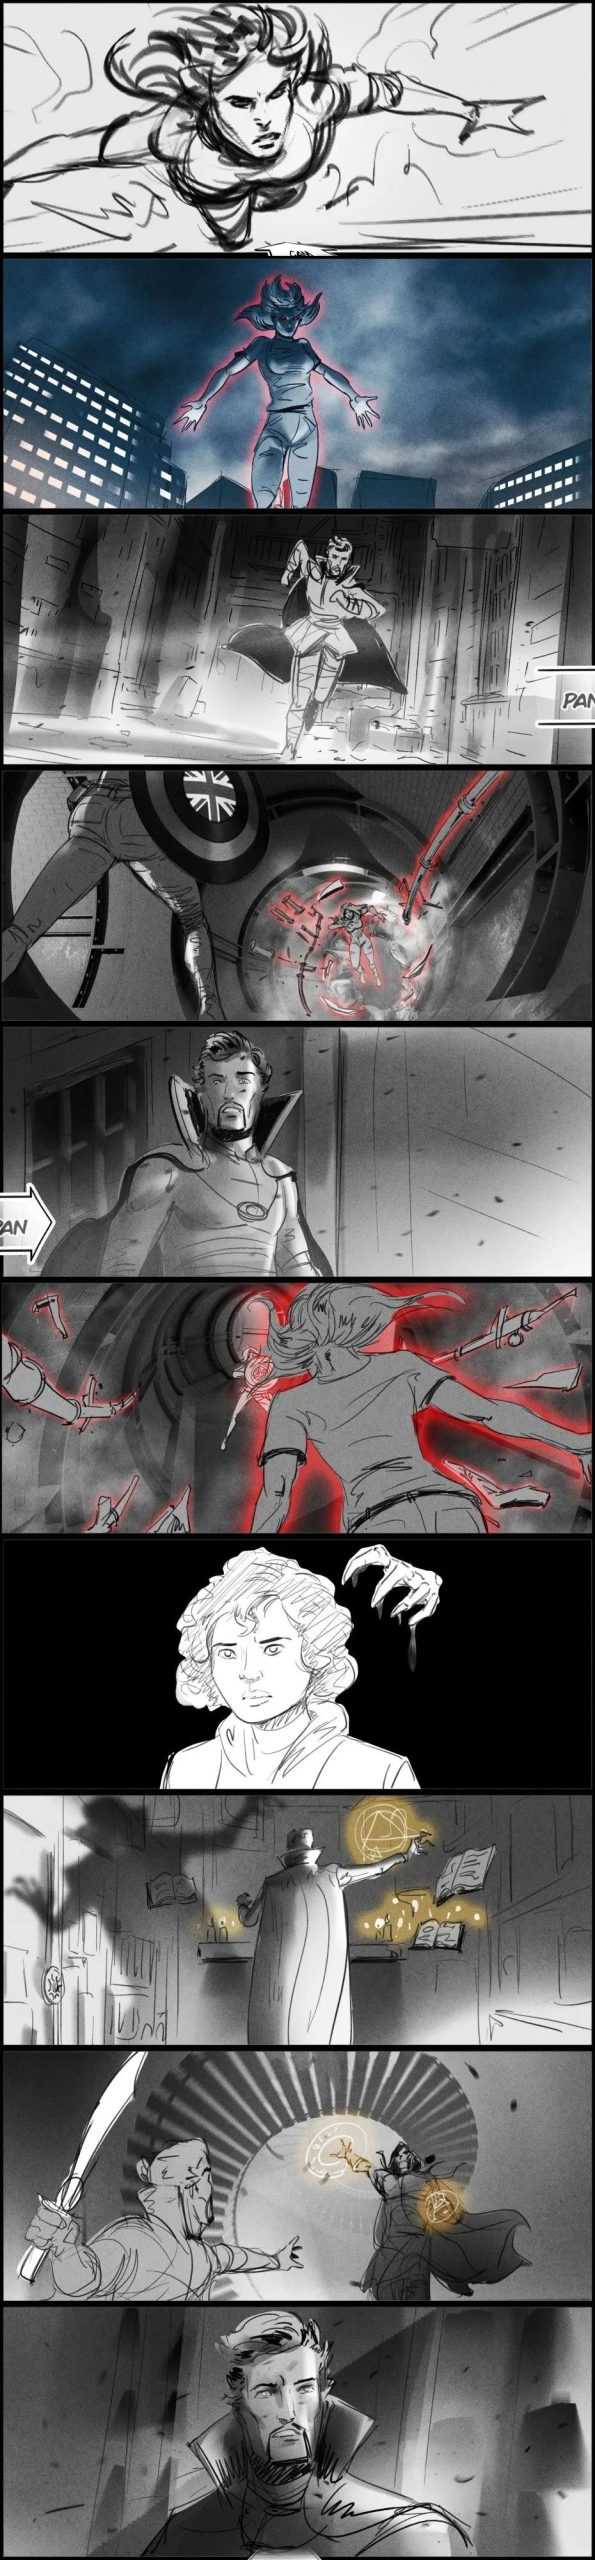 漫威电影《奇异博士2》原先的故事设定，原本有钢铁侠的-插图2